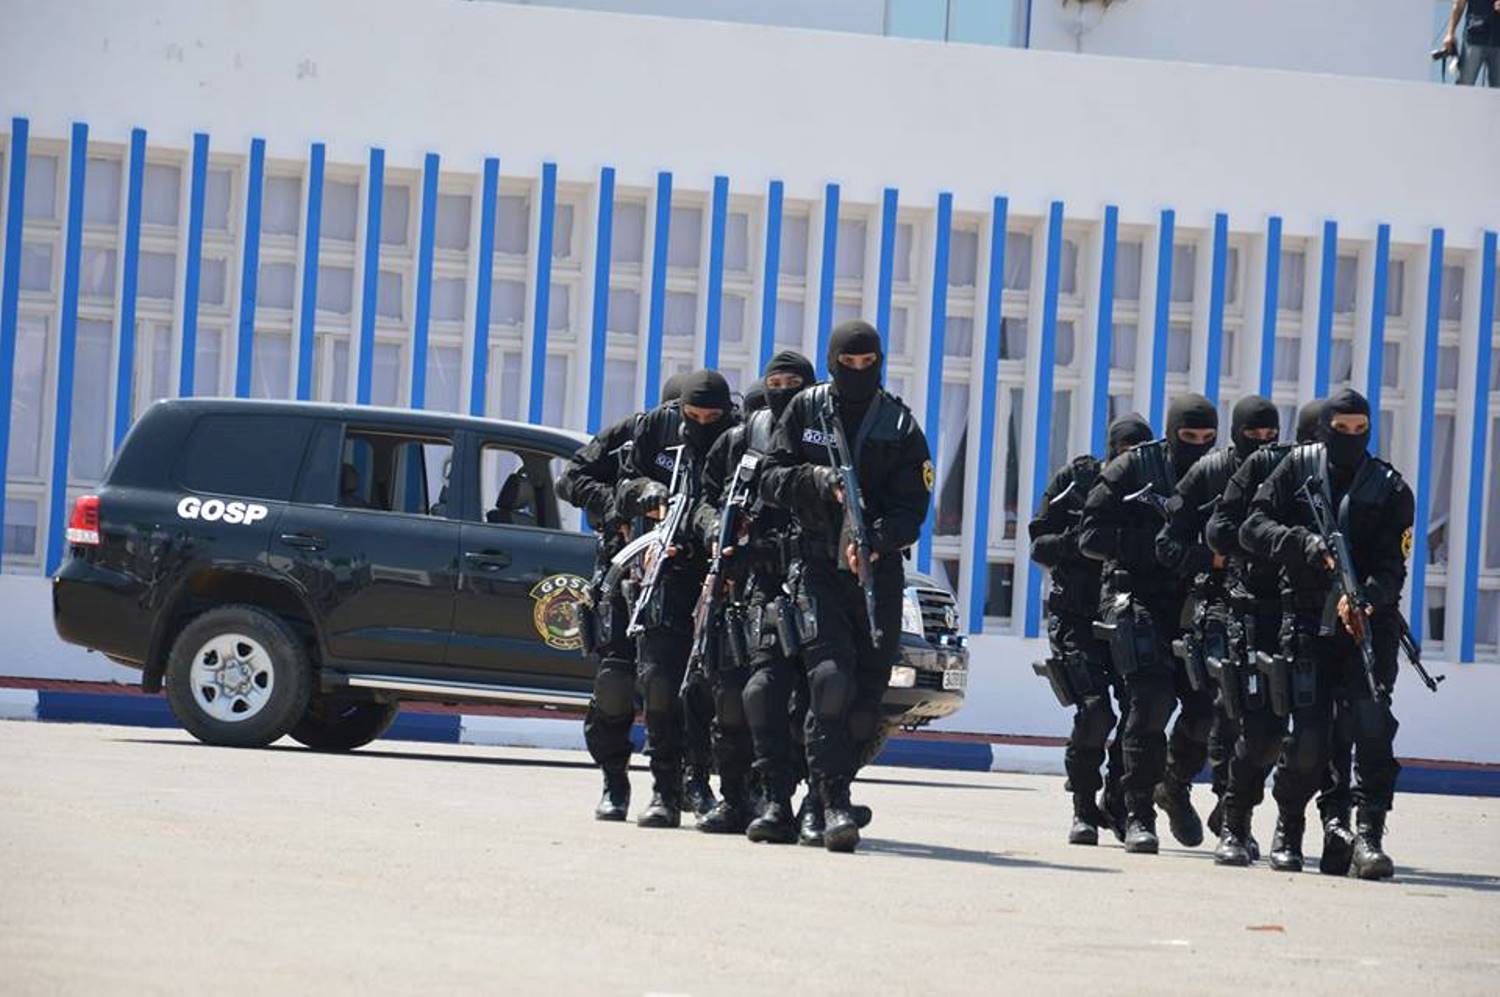 جمهرة العمليات الخاصة الشرطة الجزائرية  [ G.O.S.P ]   28468755926_5b04051bec_o